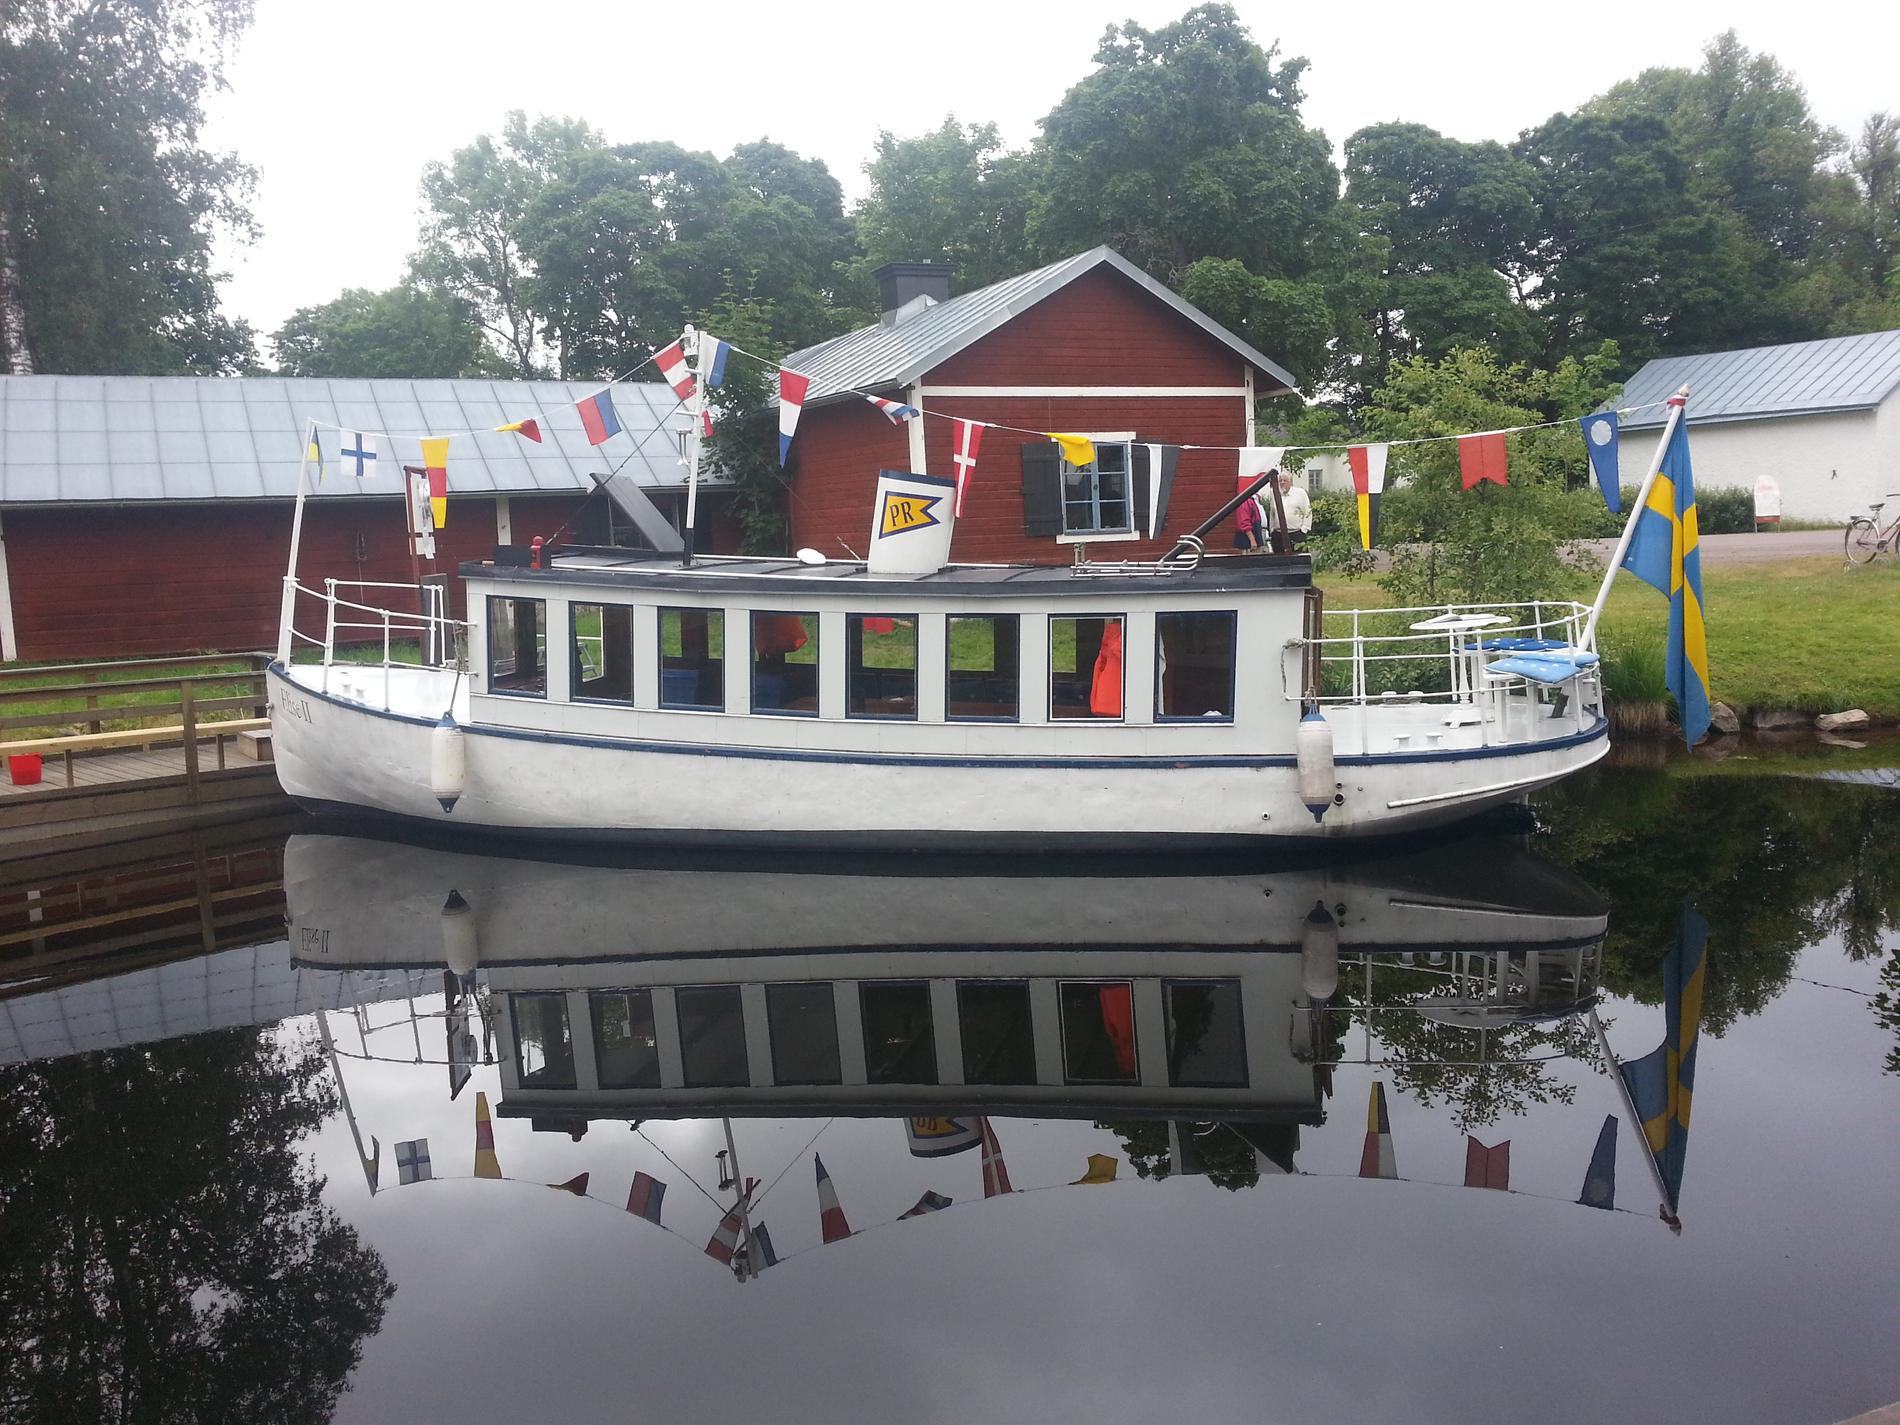 En trevlig liten båt Elise2 som trafikerar sträckan Stjärnsund-Hofors